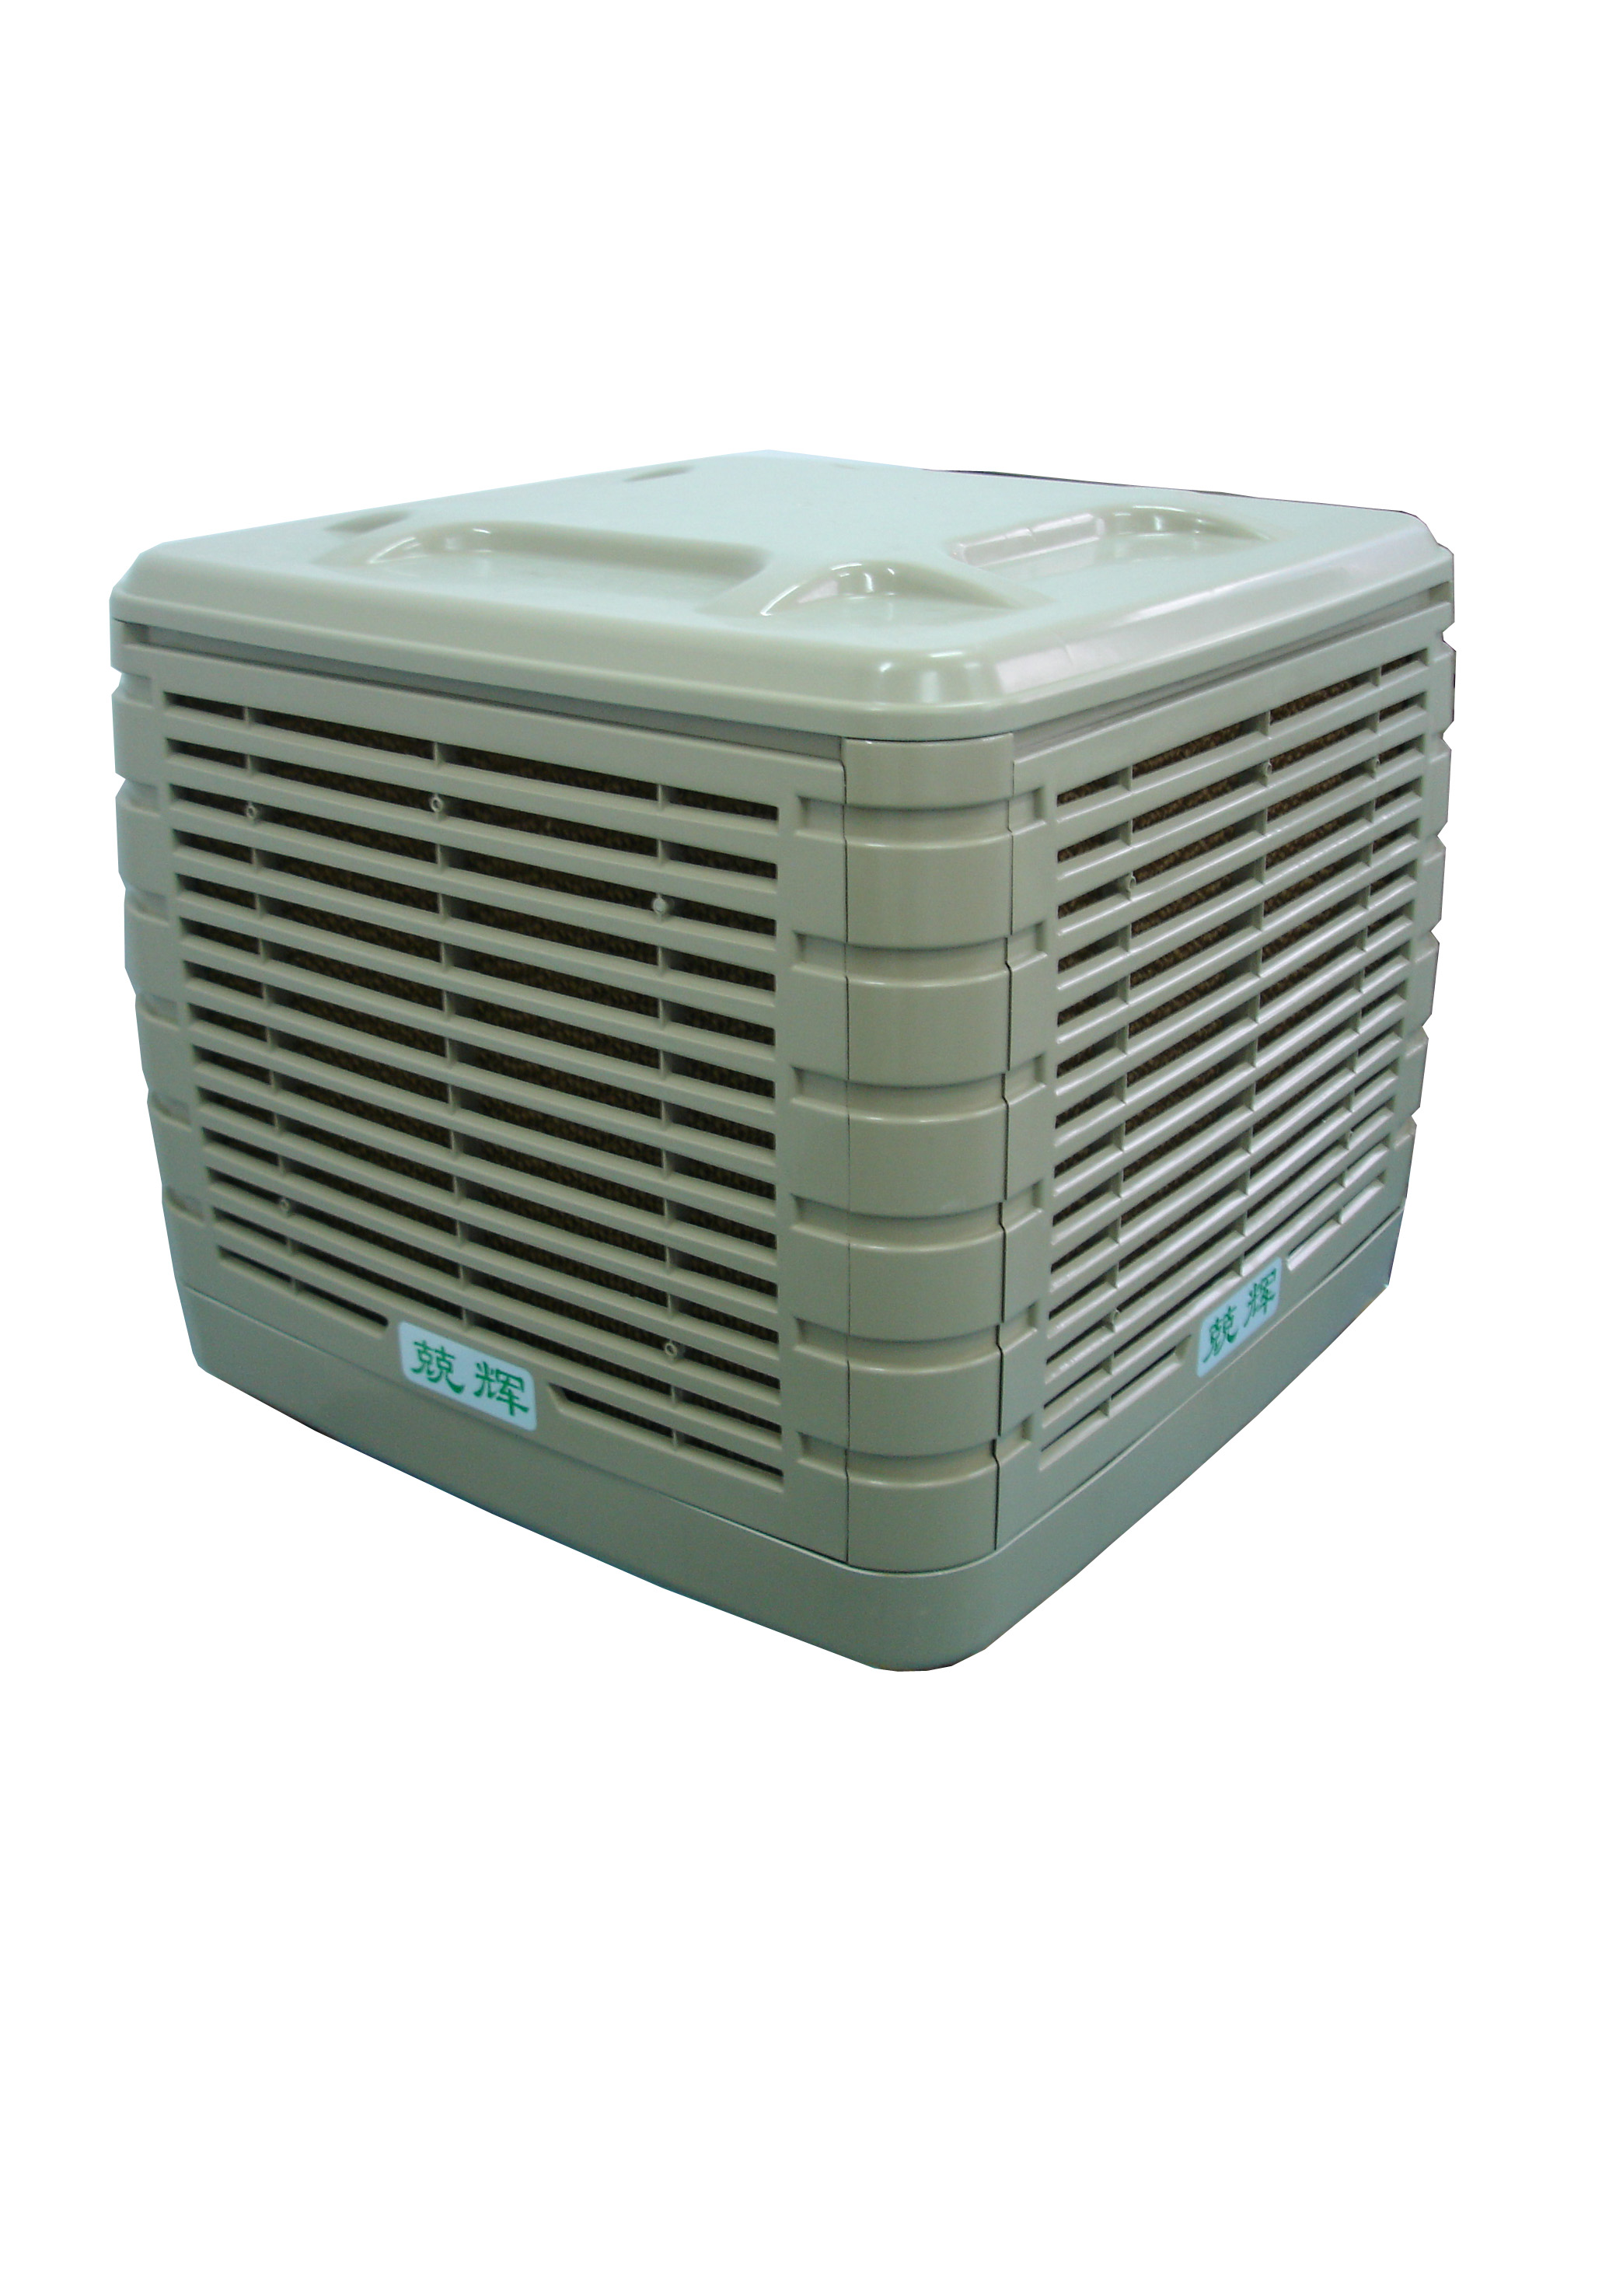 16 speed evaporative air cooler